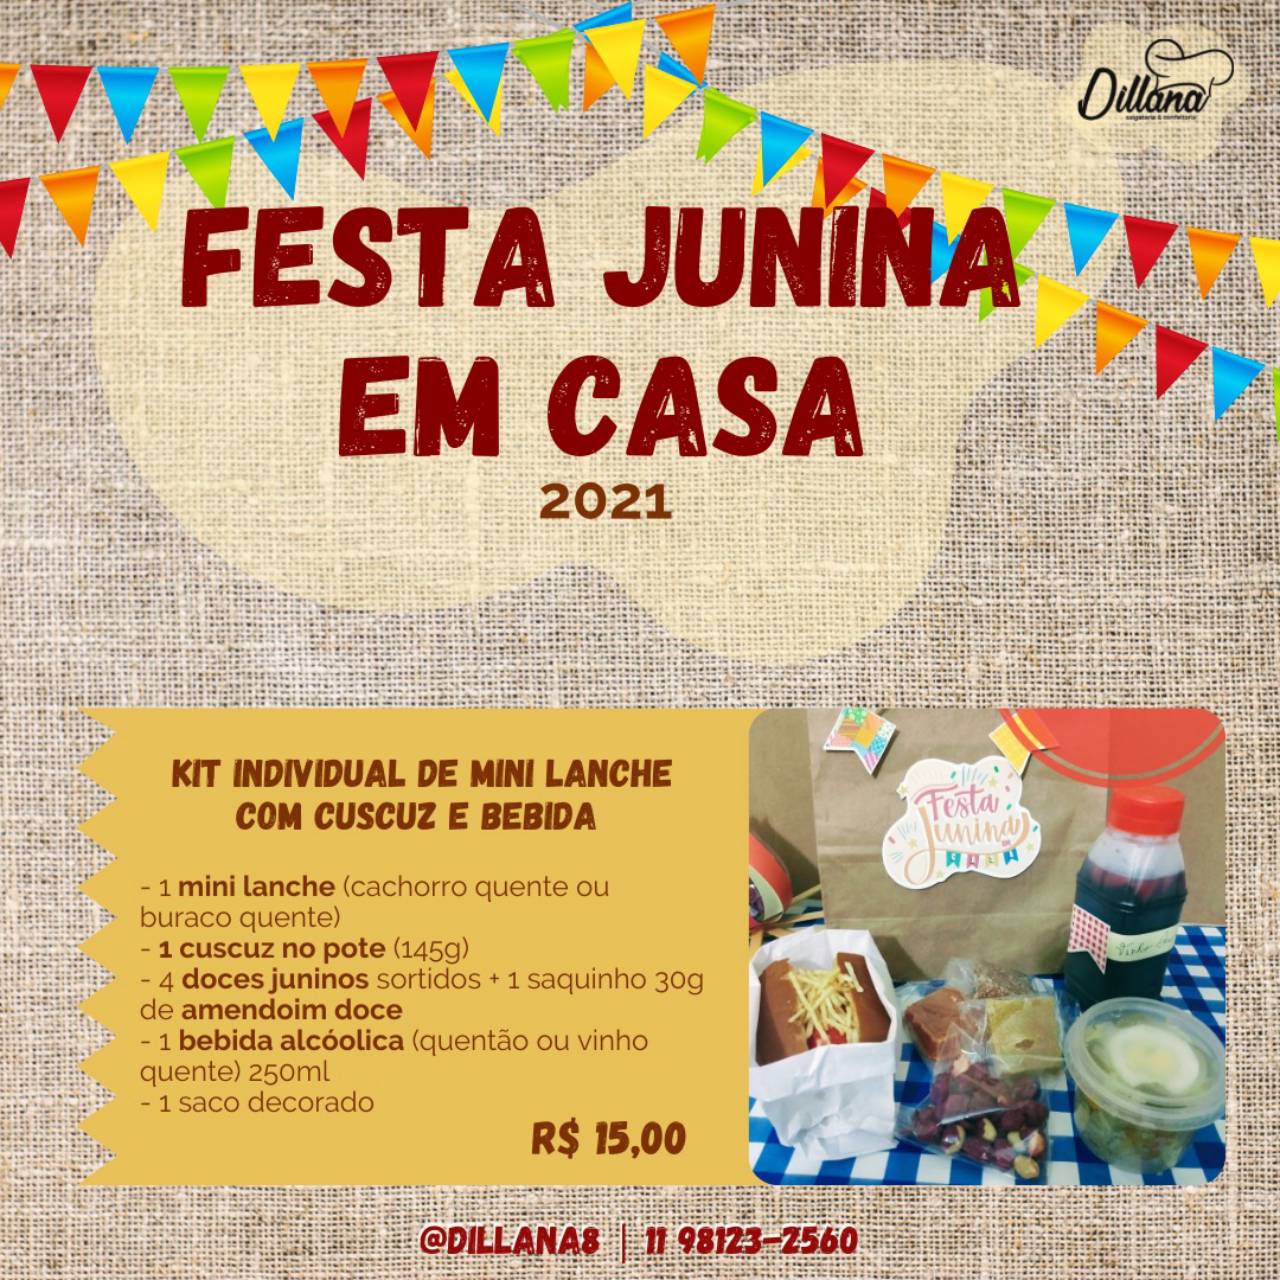 Cardápio - festa junina em casa em Jundiaí, SP | Classificados - Solutudo - cardapio de festa junina